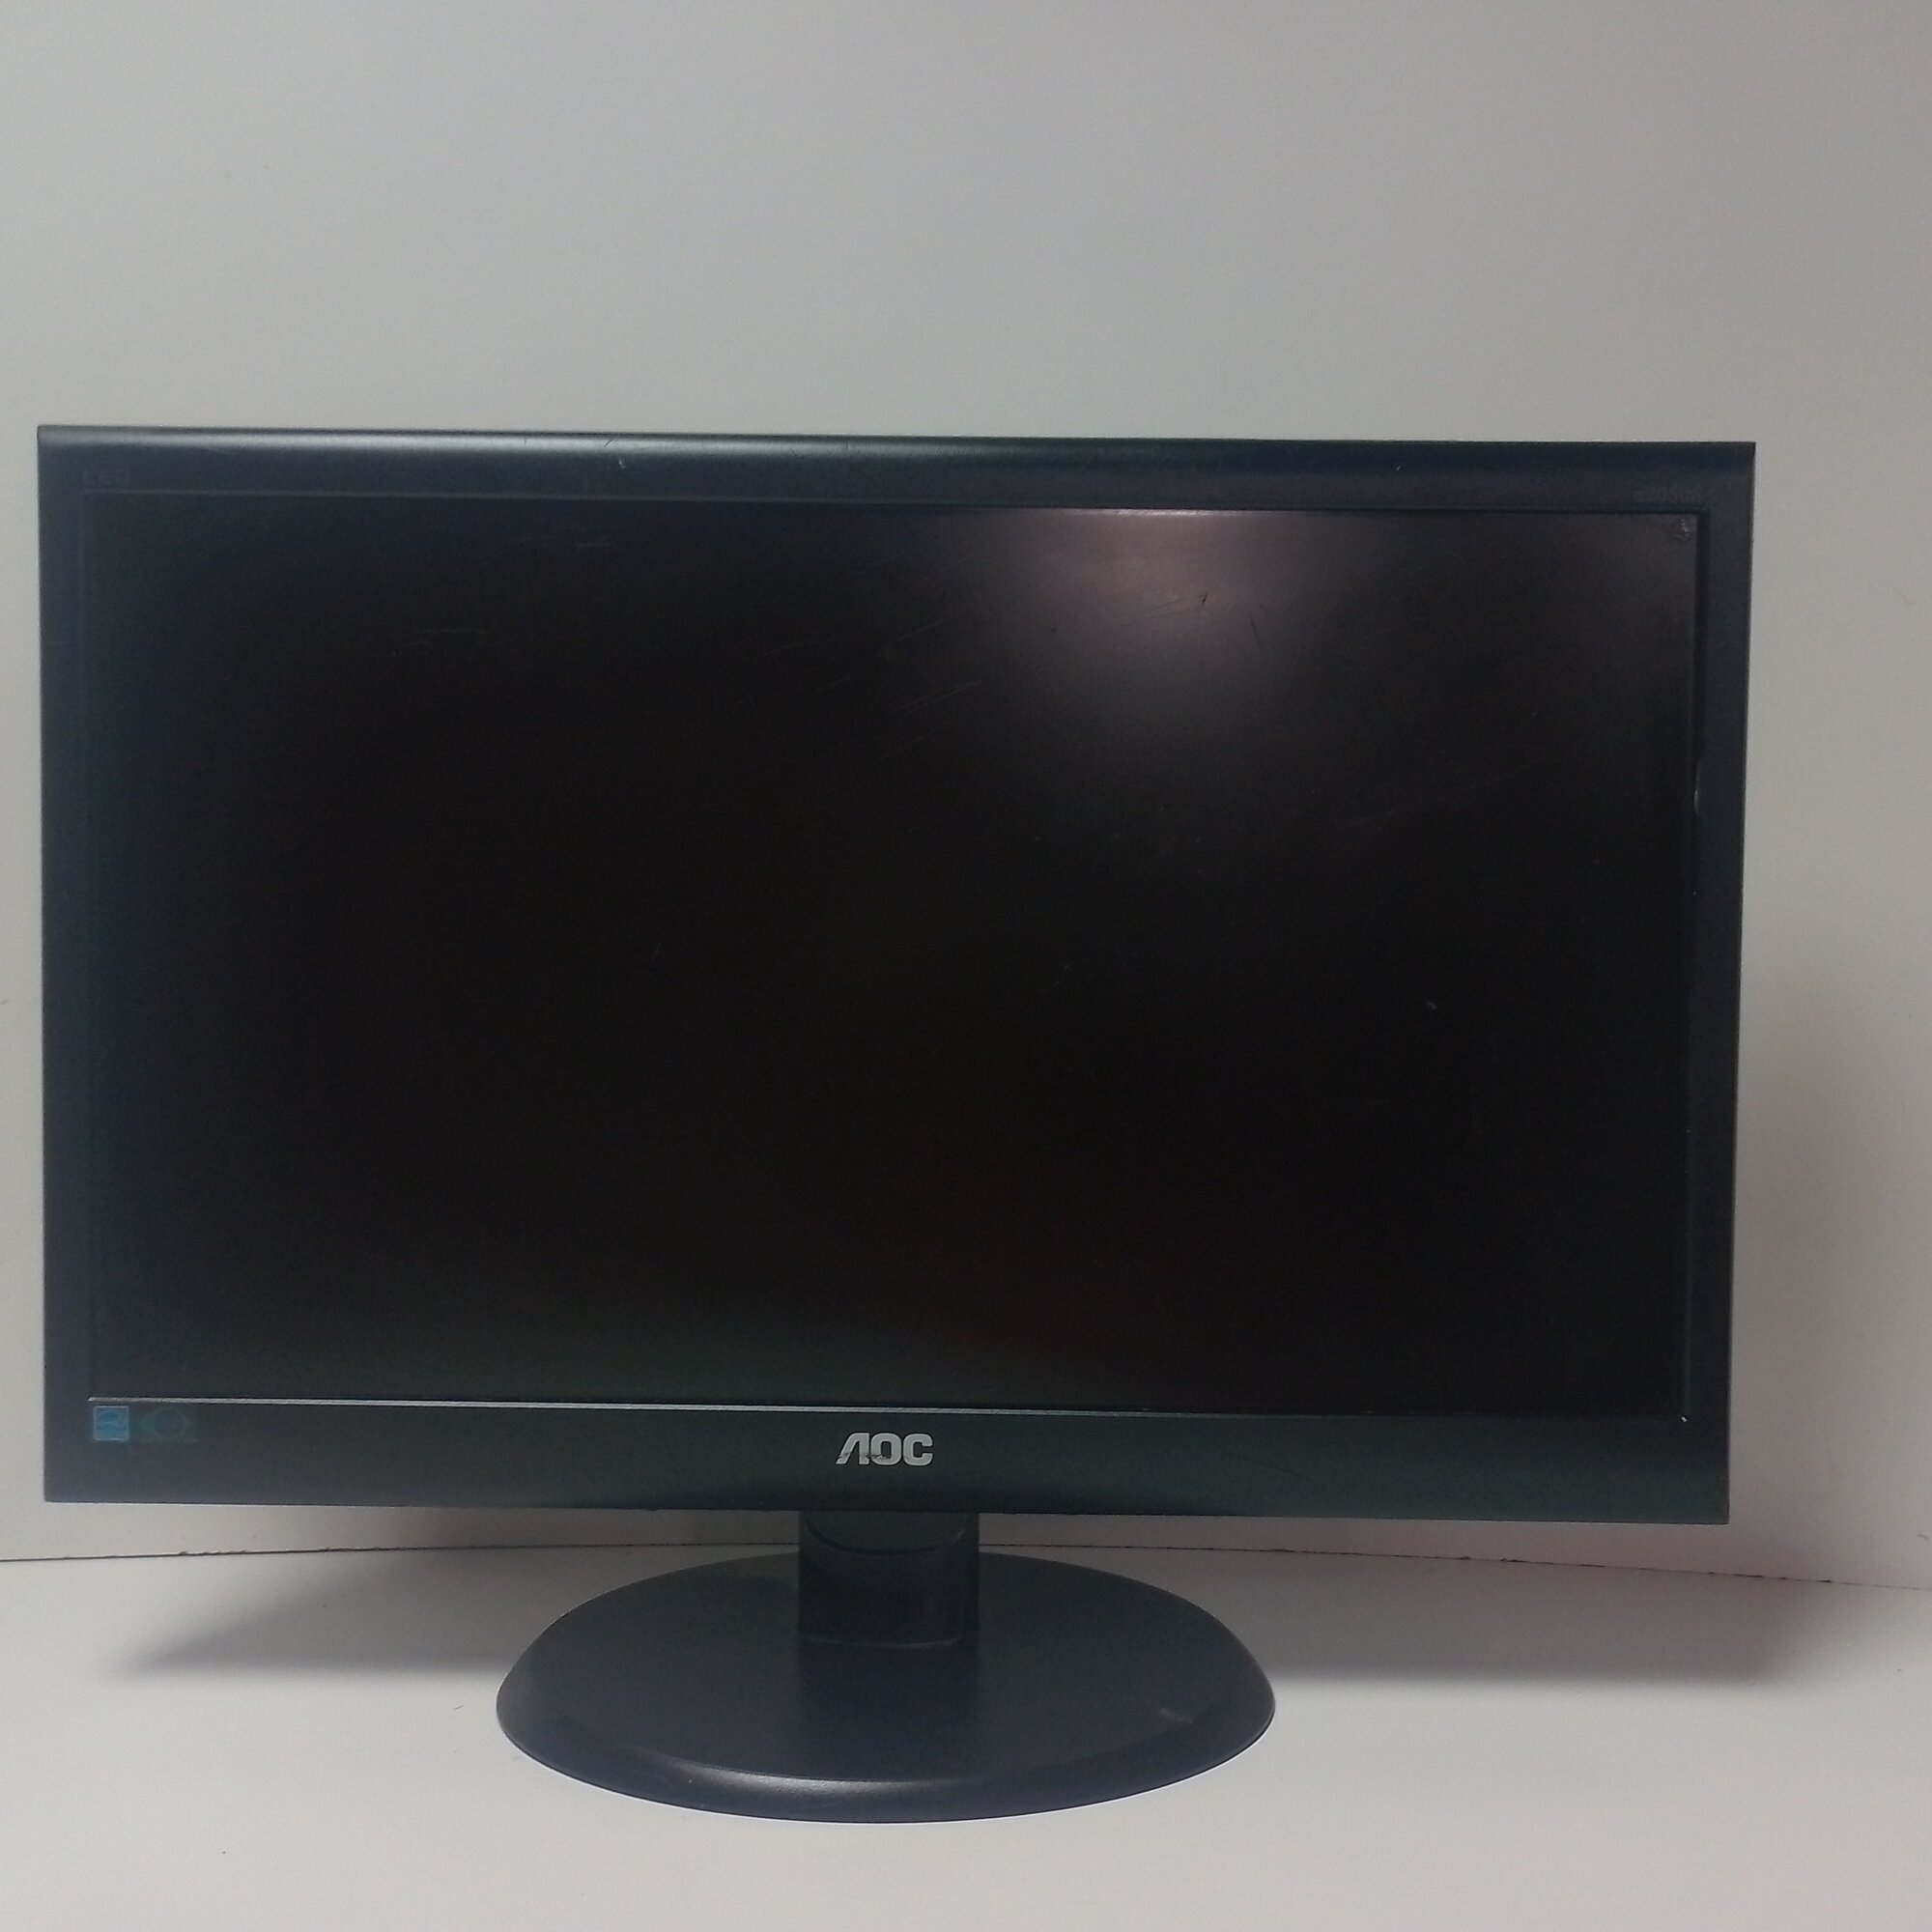 20" ЖК монитор AOC e2050S (LCD, 1600x900, D-sub)